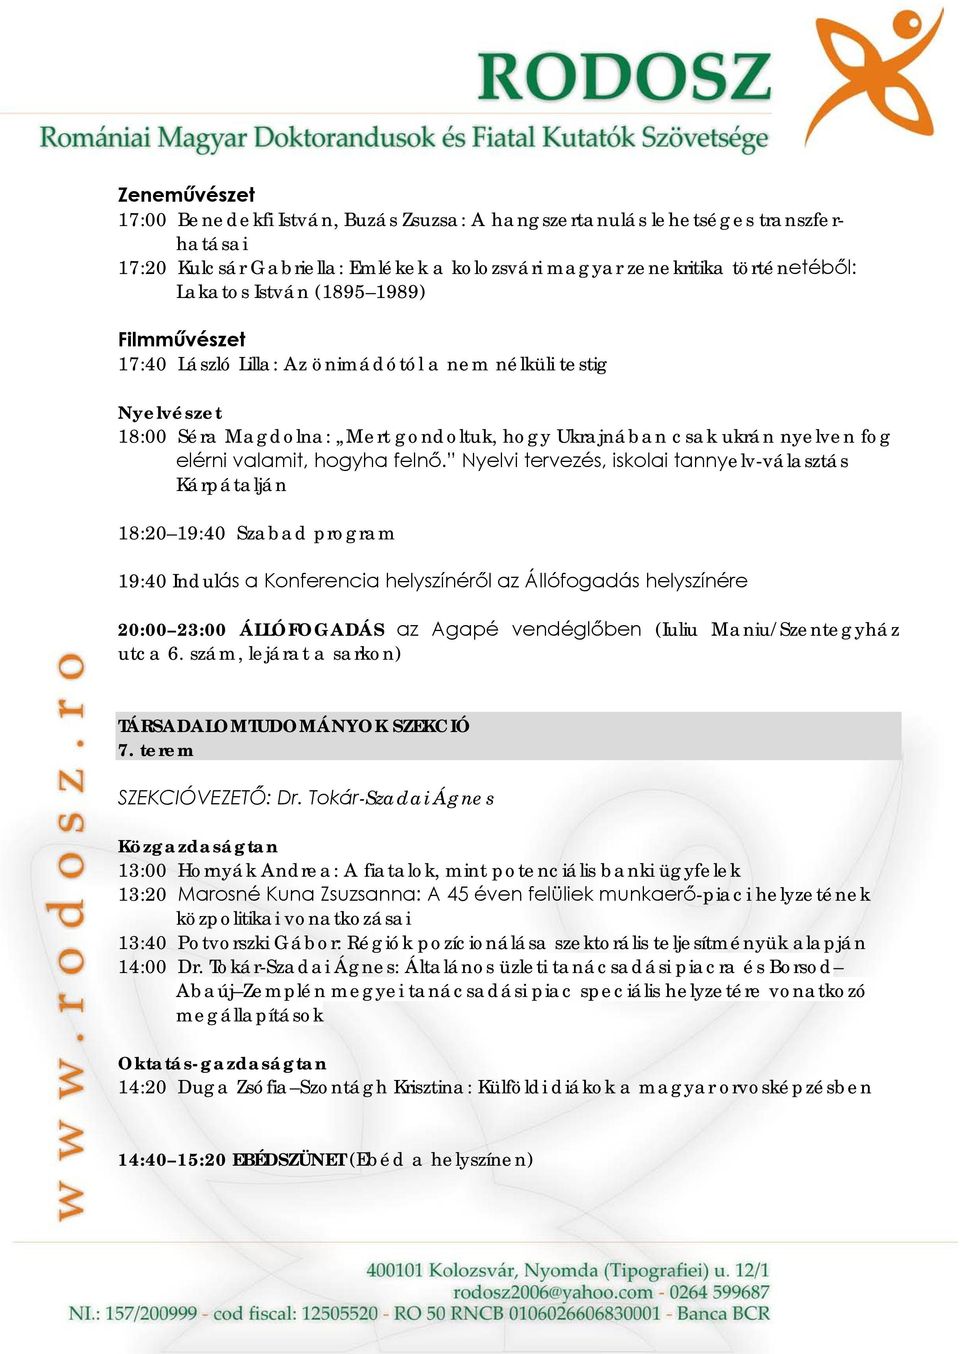 Nyelvi tervezés, iskolai tannyelv-választás Kárpátalján 18:20 19:40 Szabad program 19:40 Indulás a Konferencia helyszínéről az Állófogadás helyszínére 20:00 23:00 ÁLLÓFOGADÁS az Agapé vendéglőben